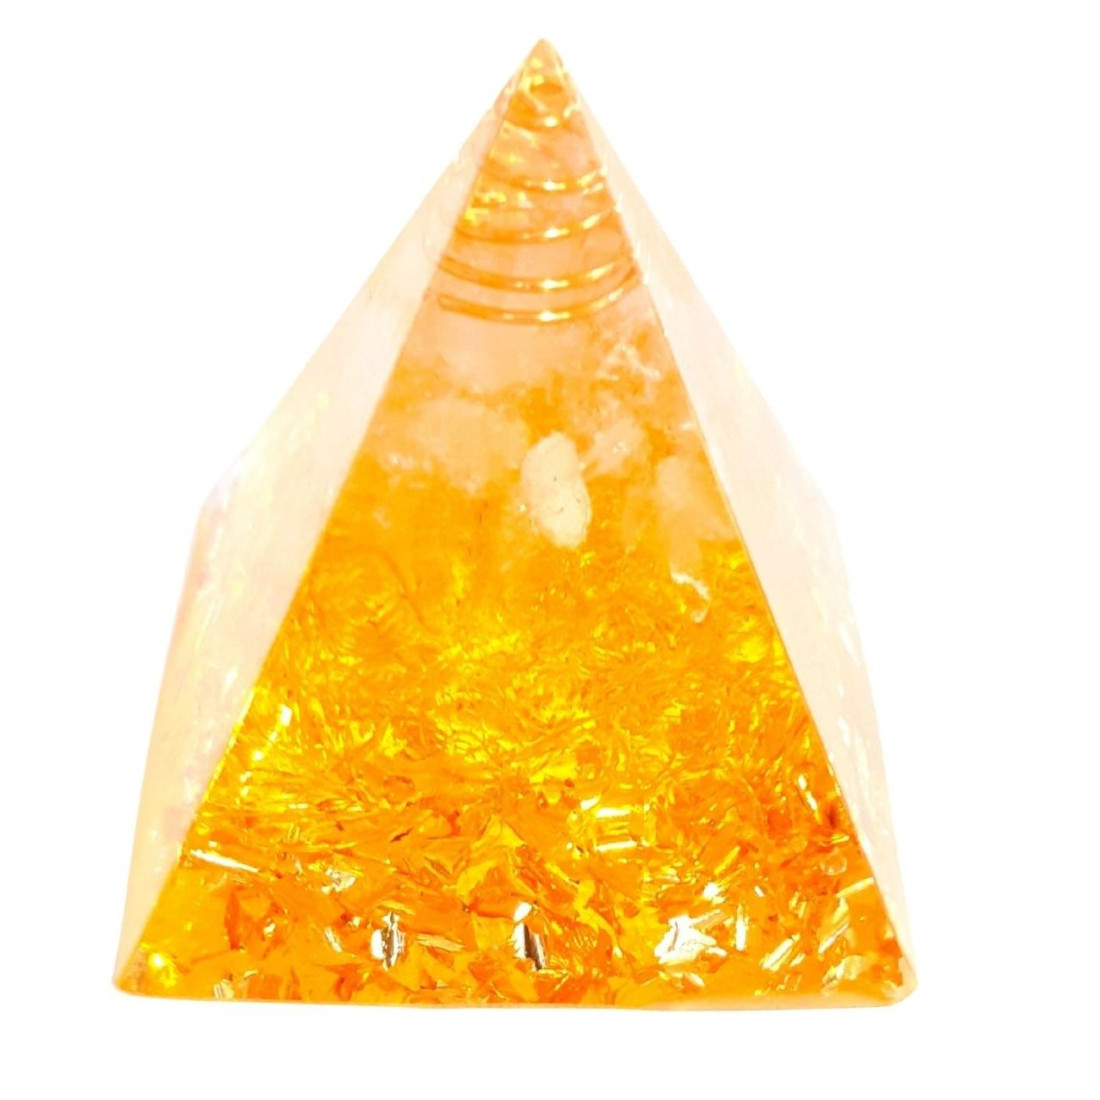 Pyramide orgonite orgone en résine, citrine, copeaux dorés orgo7 5cm